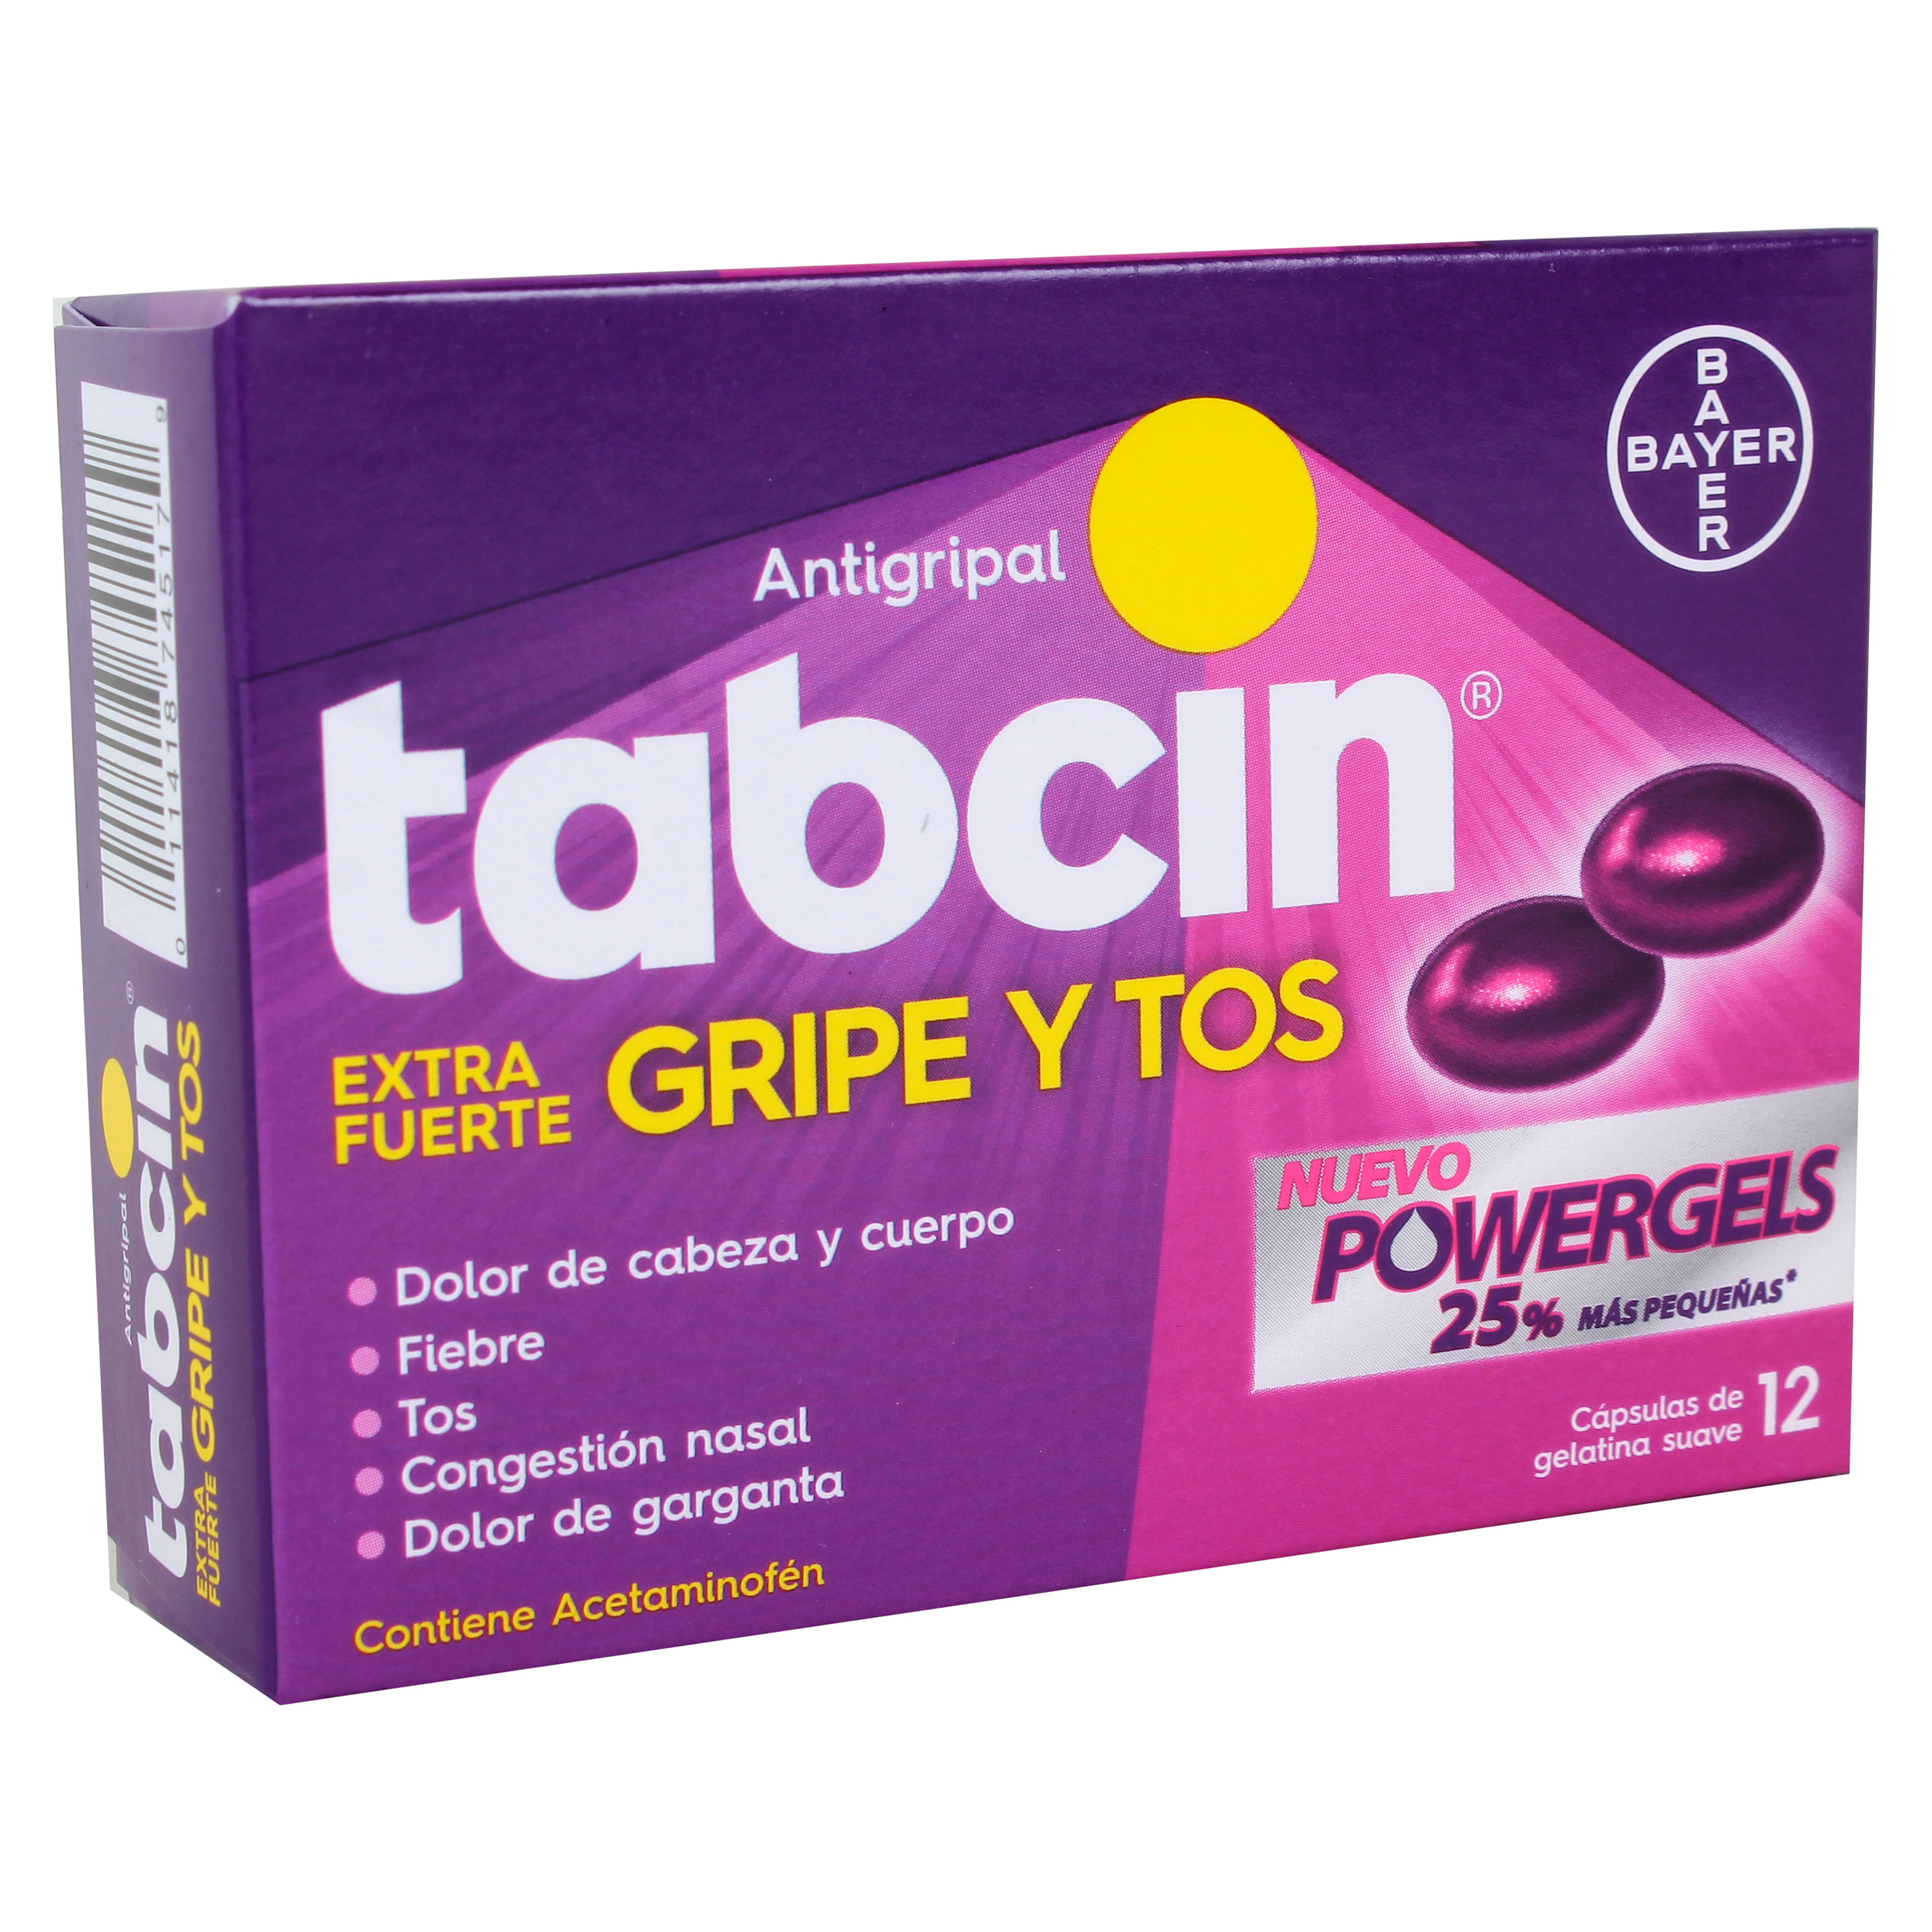 tabcin